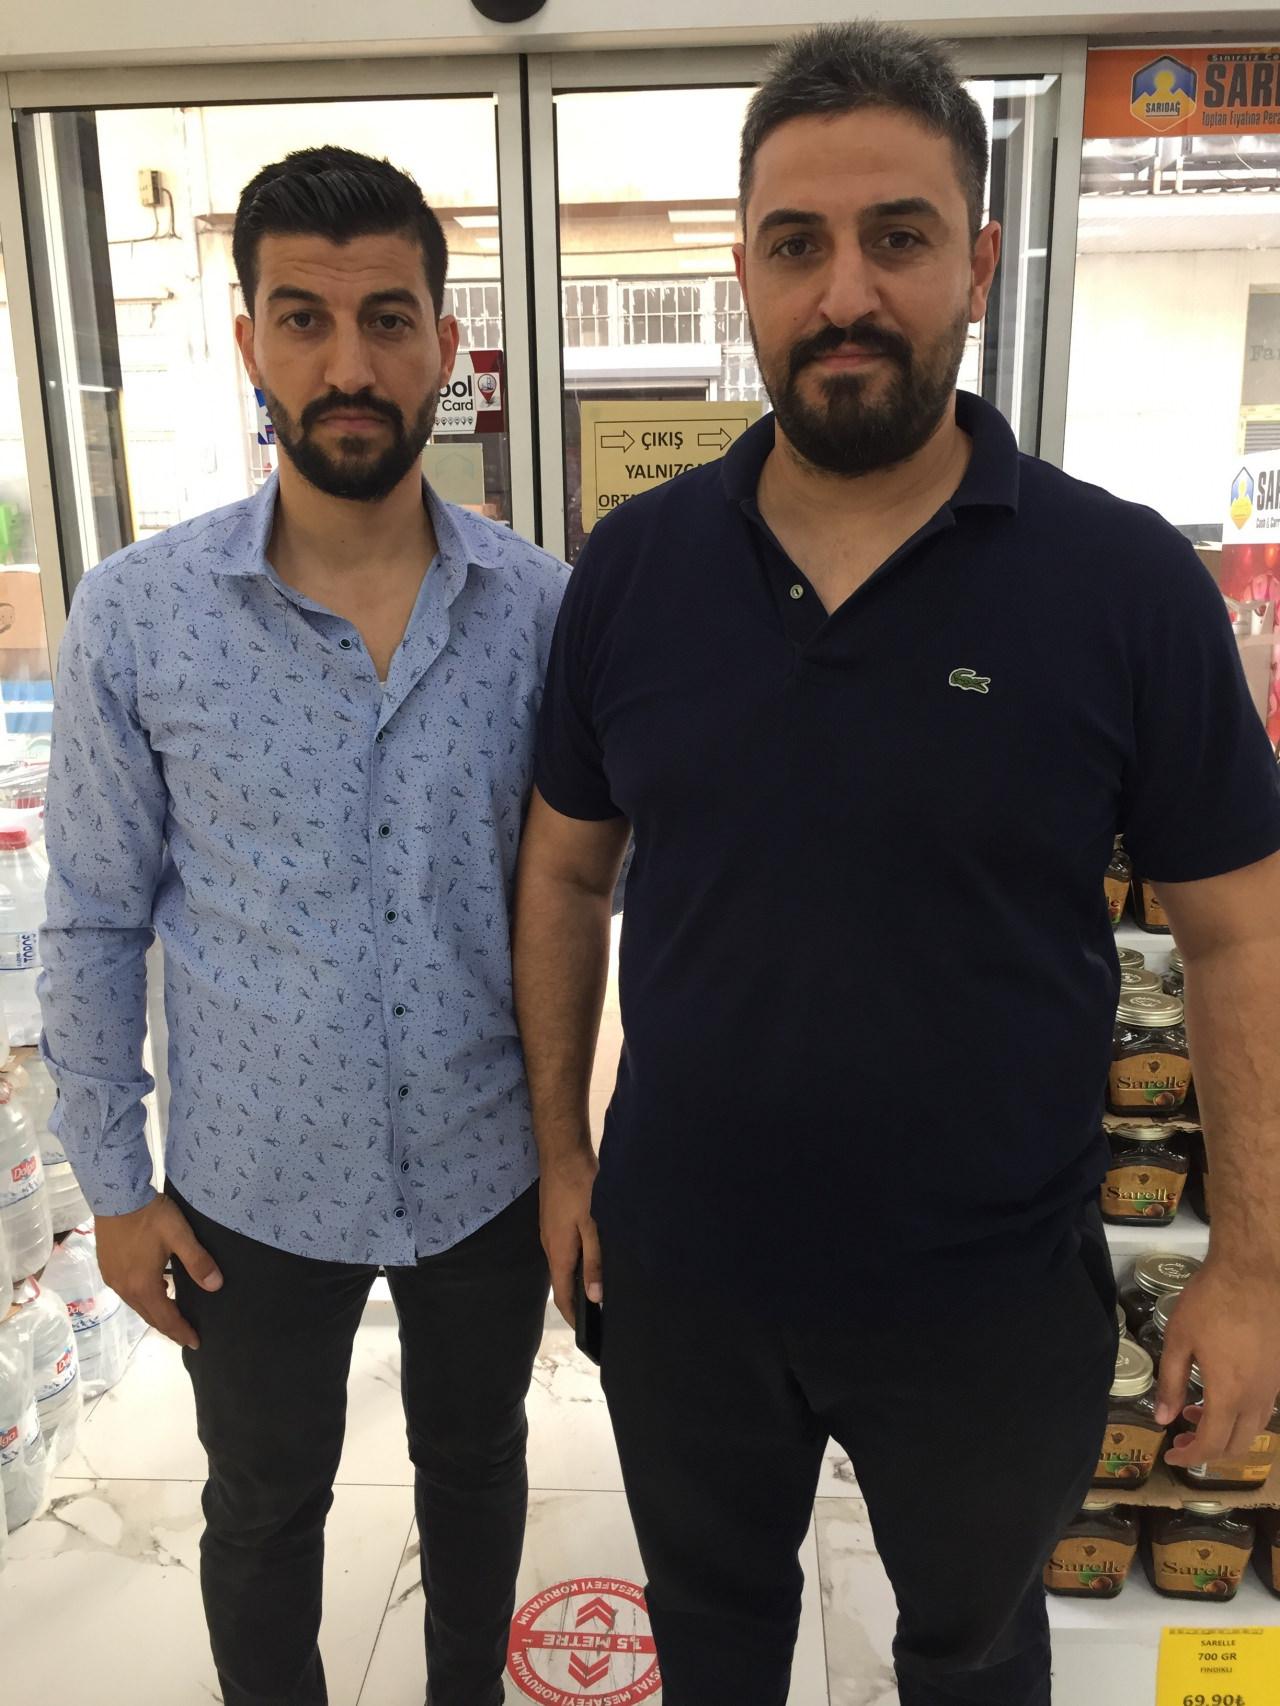 Adana'da marketini soyan hırsıza hayran kalan işyeri sahibi